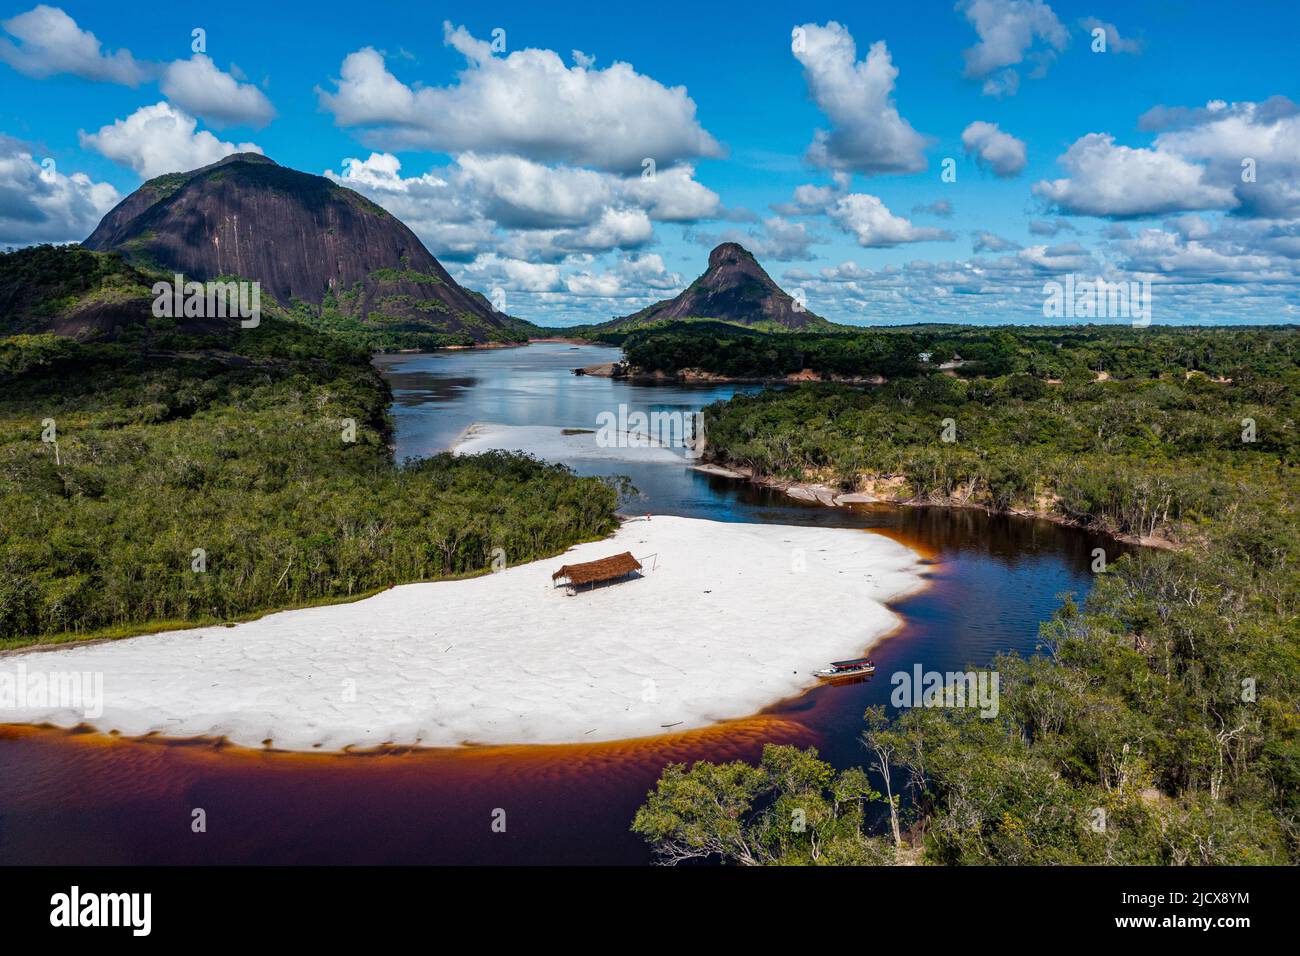 Río negro y playa de arena blanca frente a colinas de granito, Cerros de Mavecure, Este de Colombia, Sudamérica Foto de stock